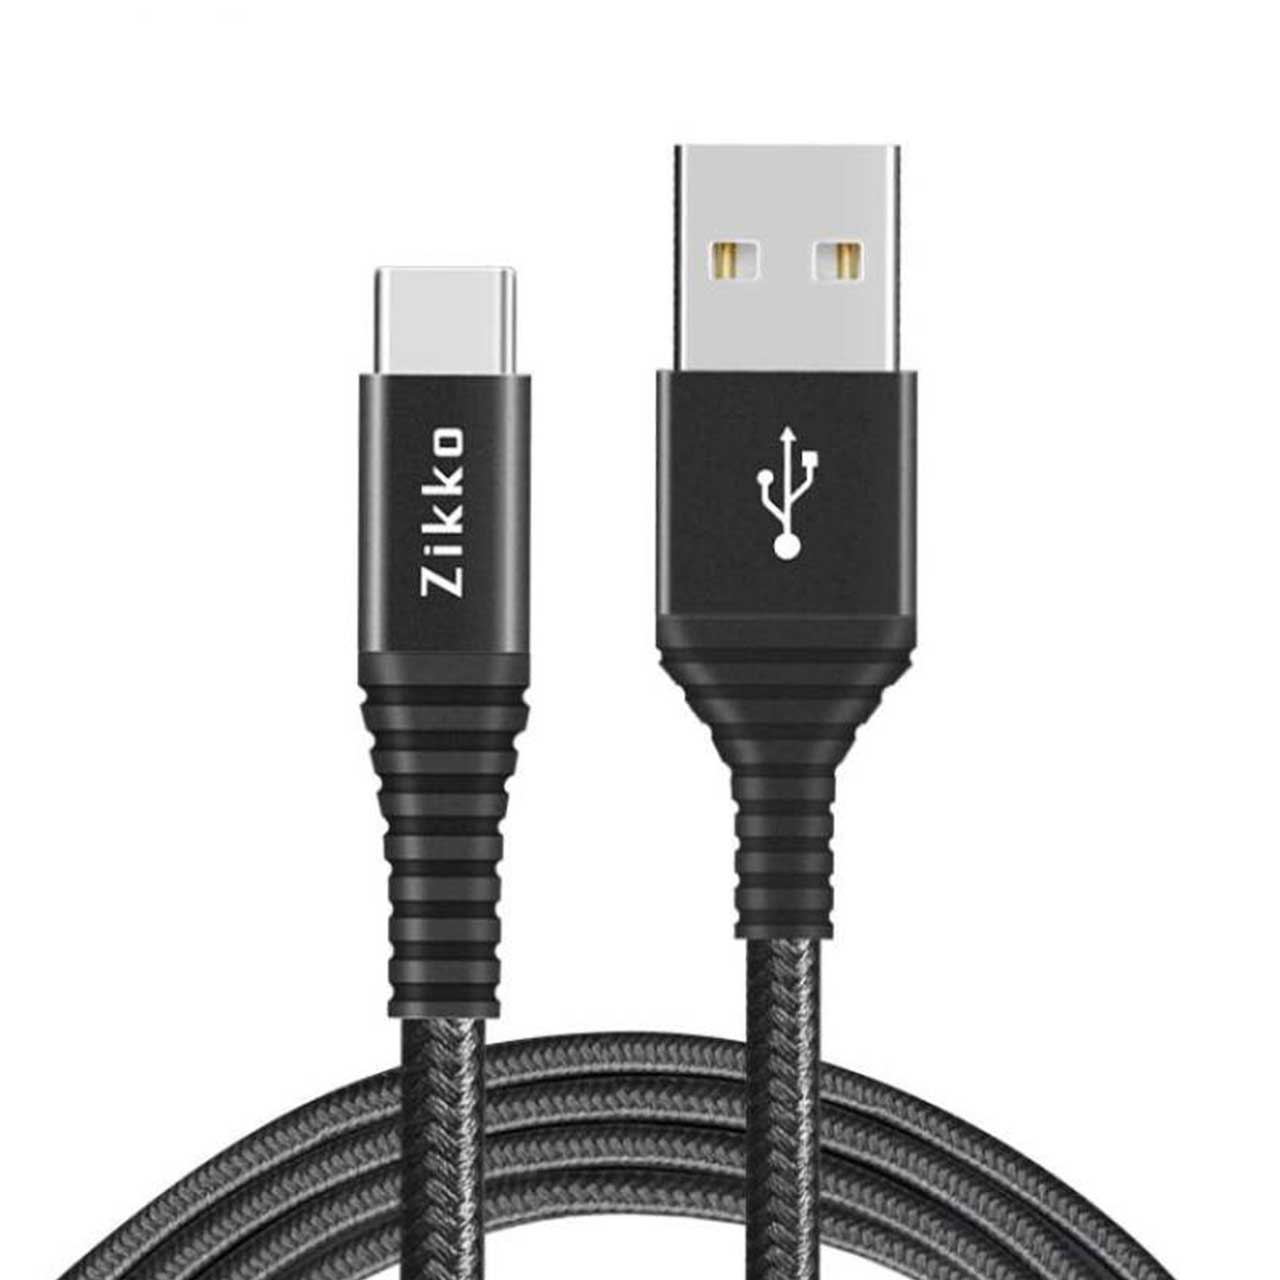 کابل تبدیل USB به USB-C زیکو مدل SC800 طول 1.5 متر - اسمارت سیب